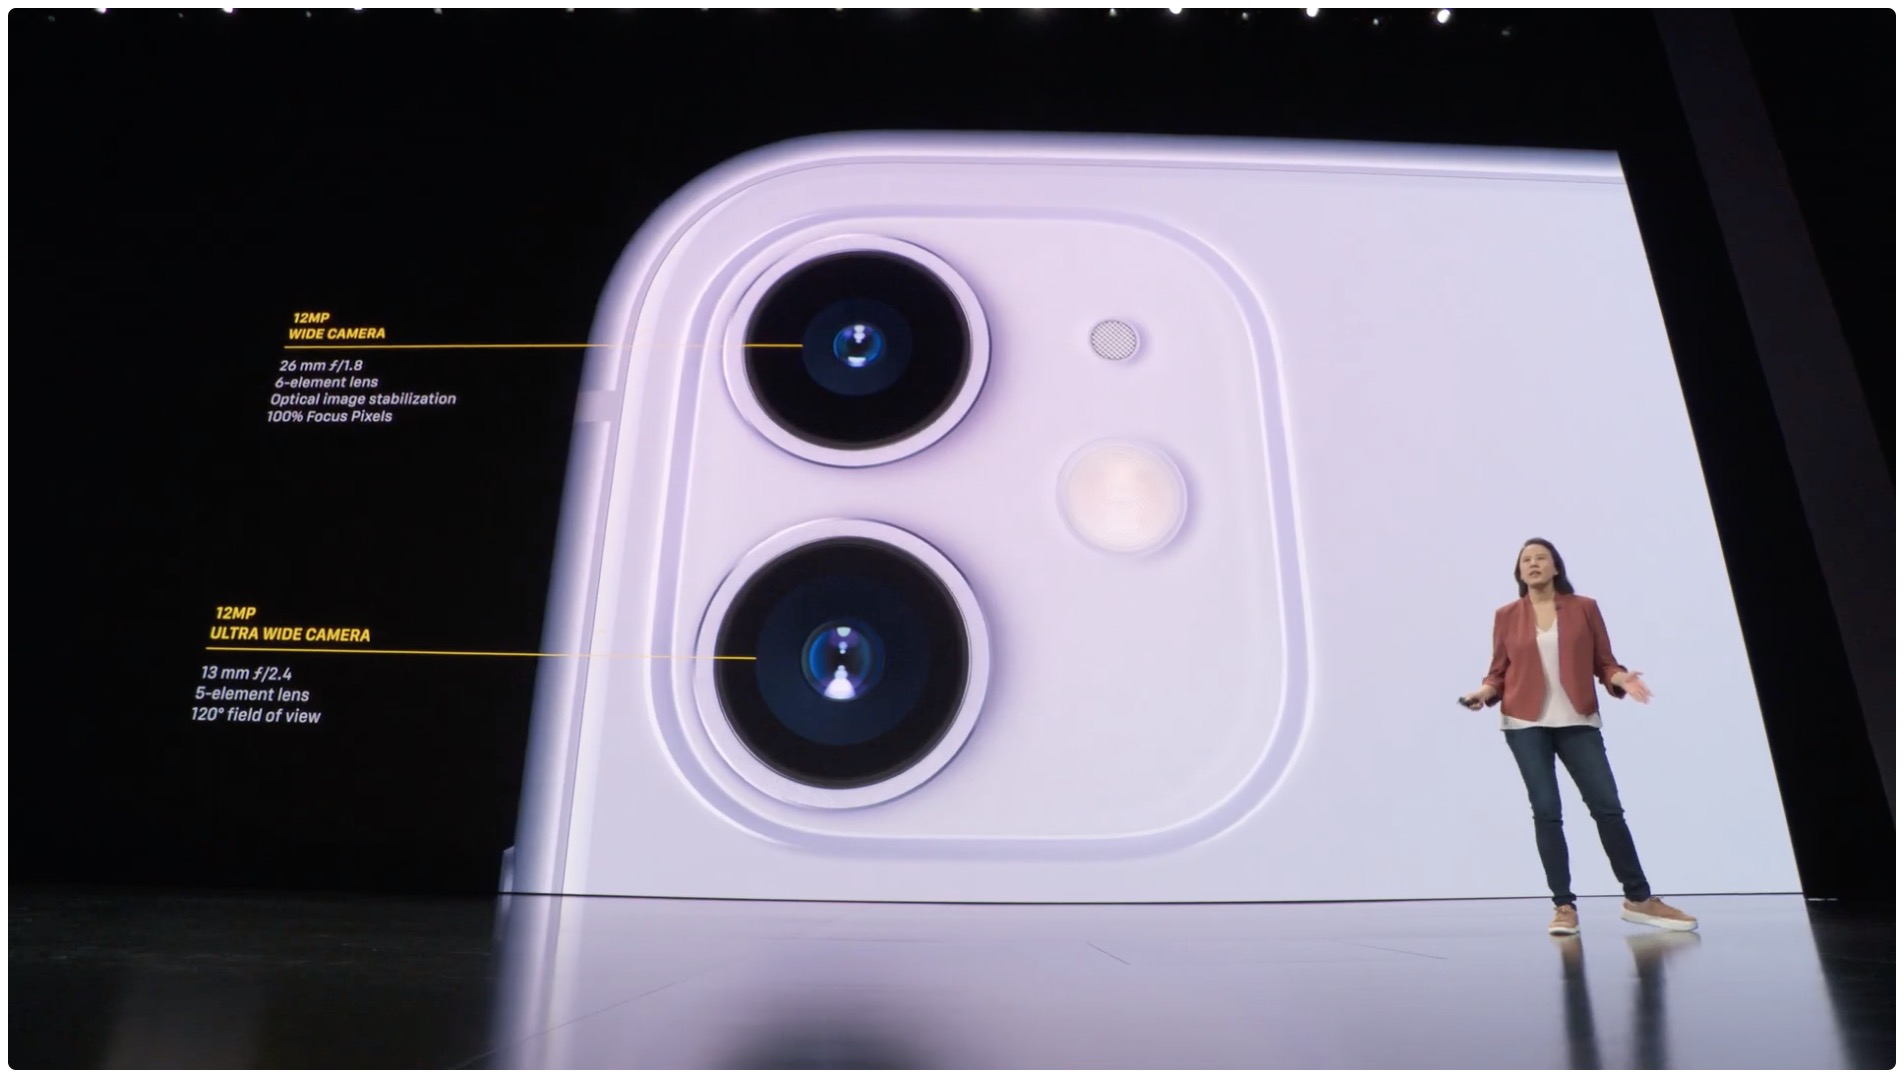 iPhone 11 camera specs